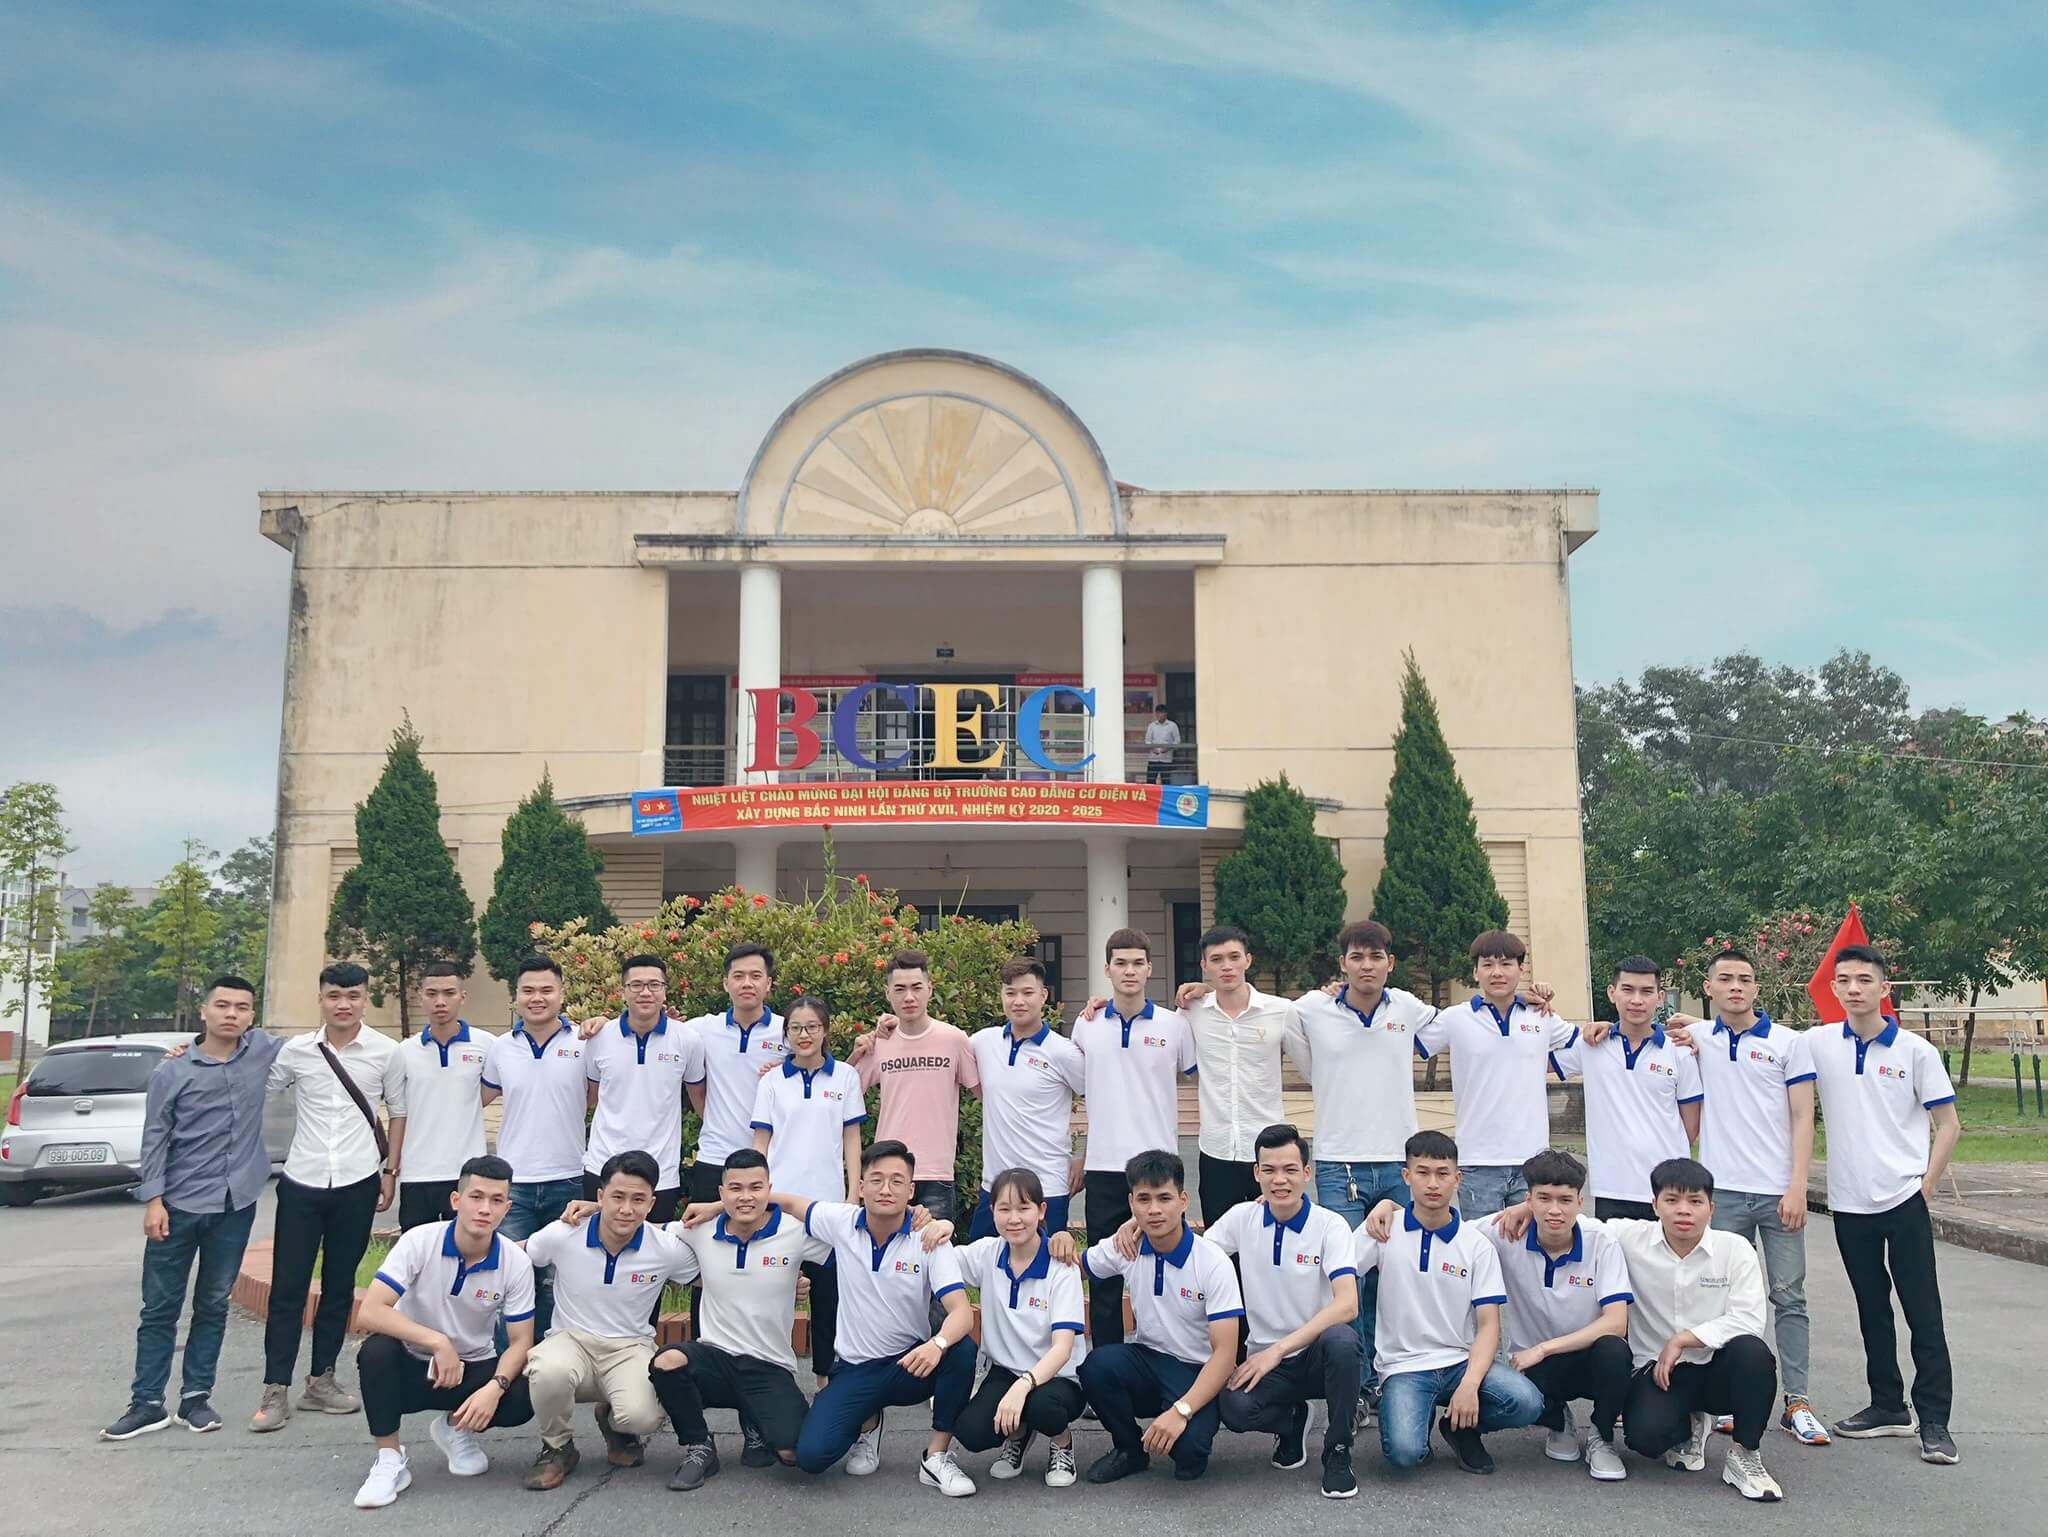 Cao đẳng Cơ điện và Xây dựng Bắc Ninh